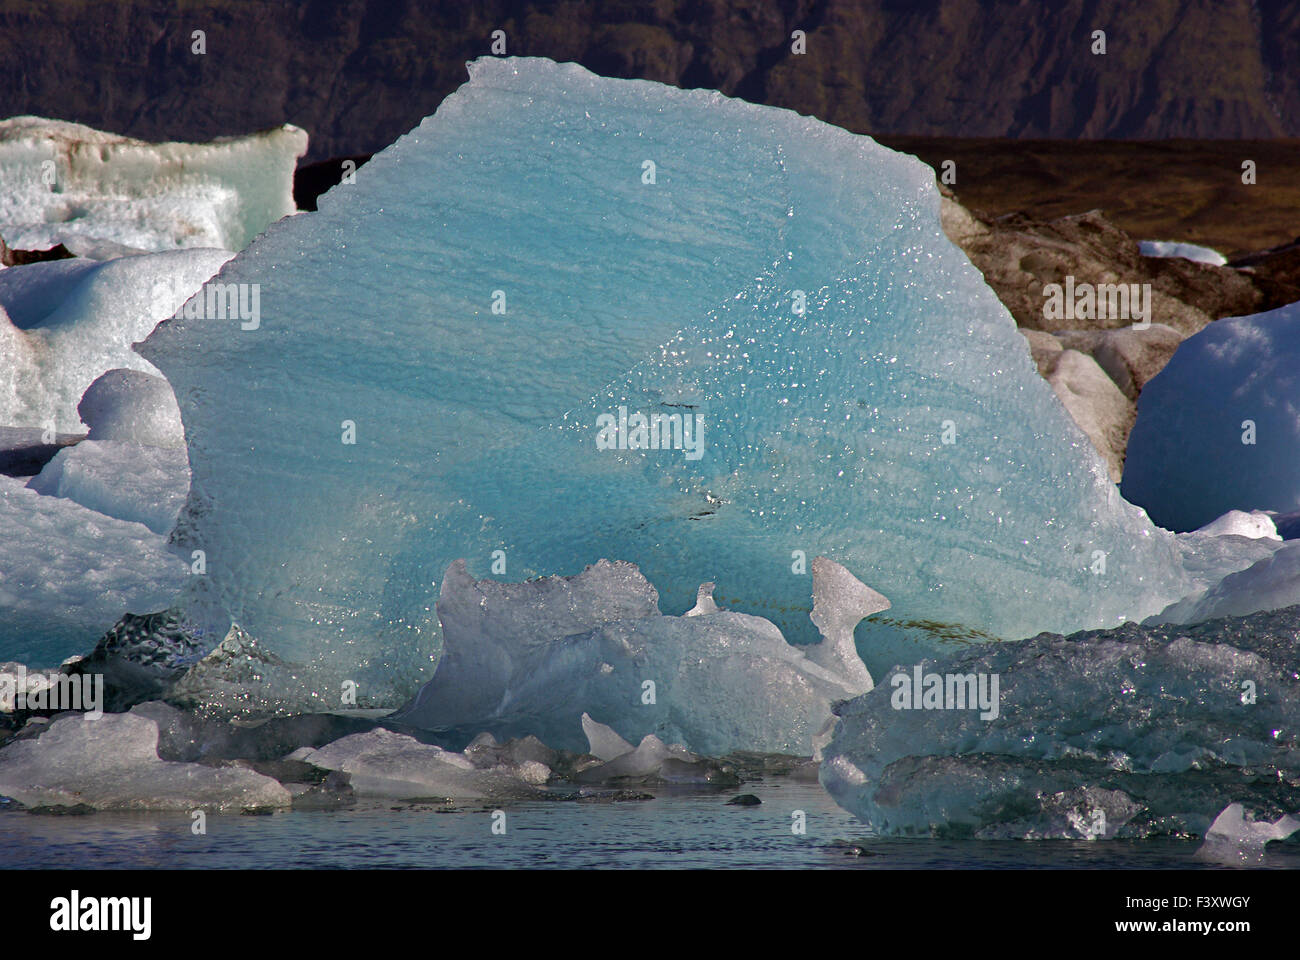 Arte di ghiaccio: laguna glaciale del lago Foto Stock